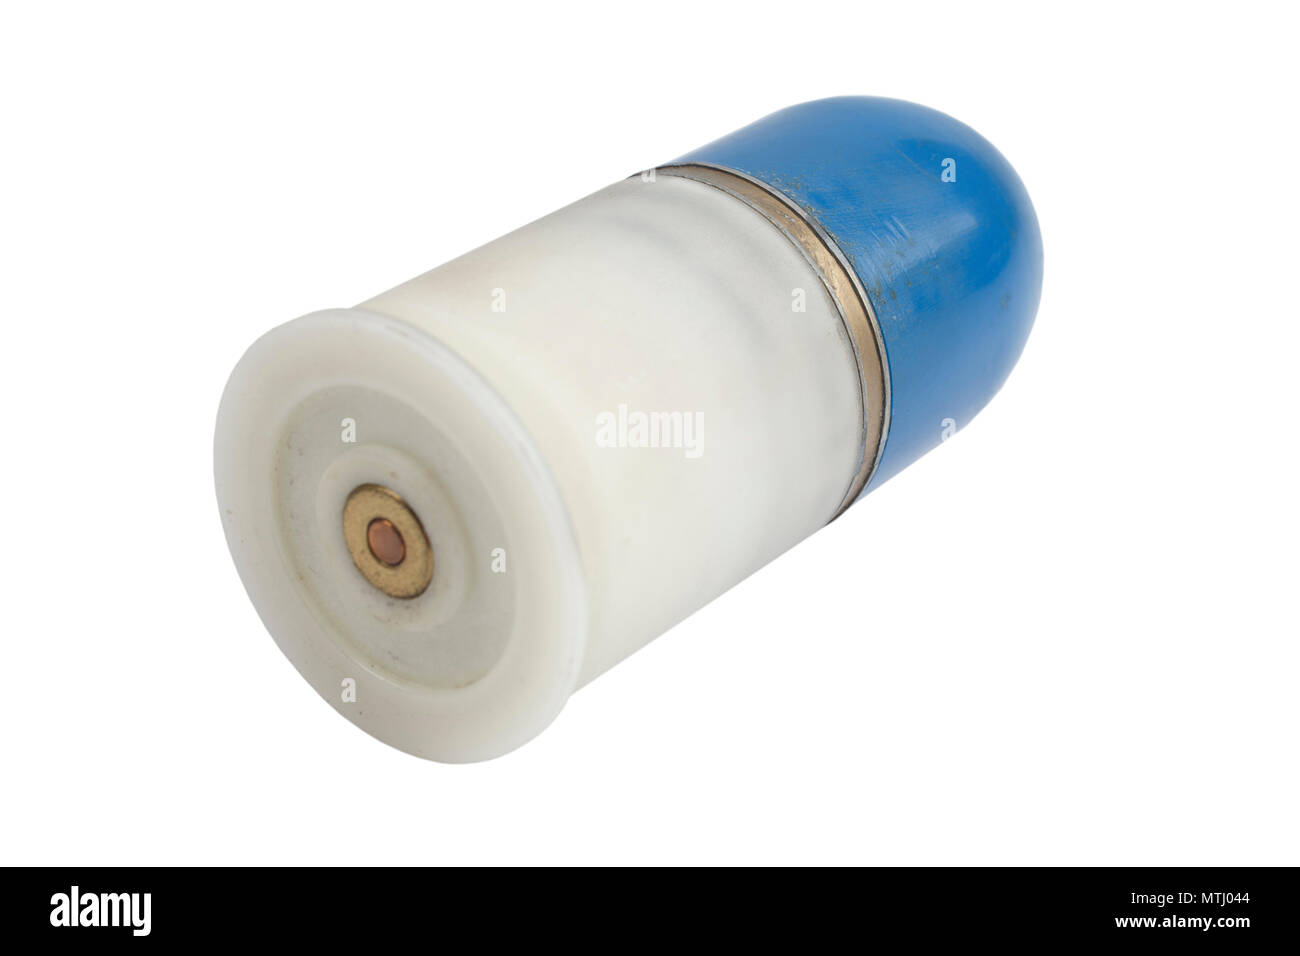 Lance-grenades de 40 mm isolé sur un fond blanc Banque D'Images